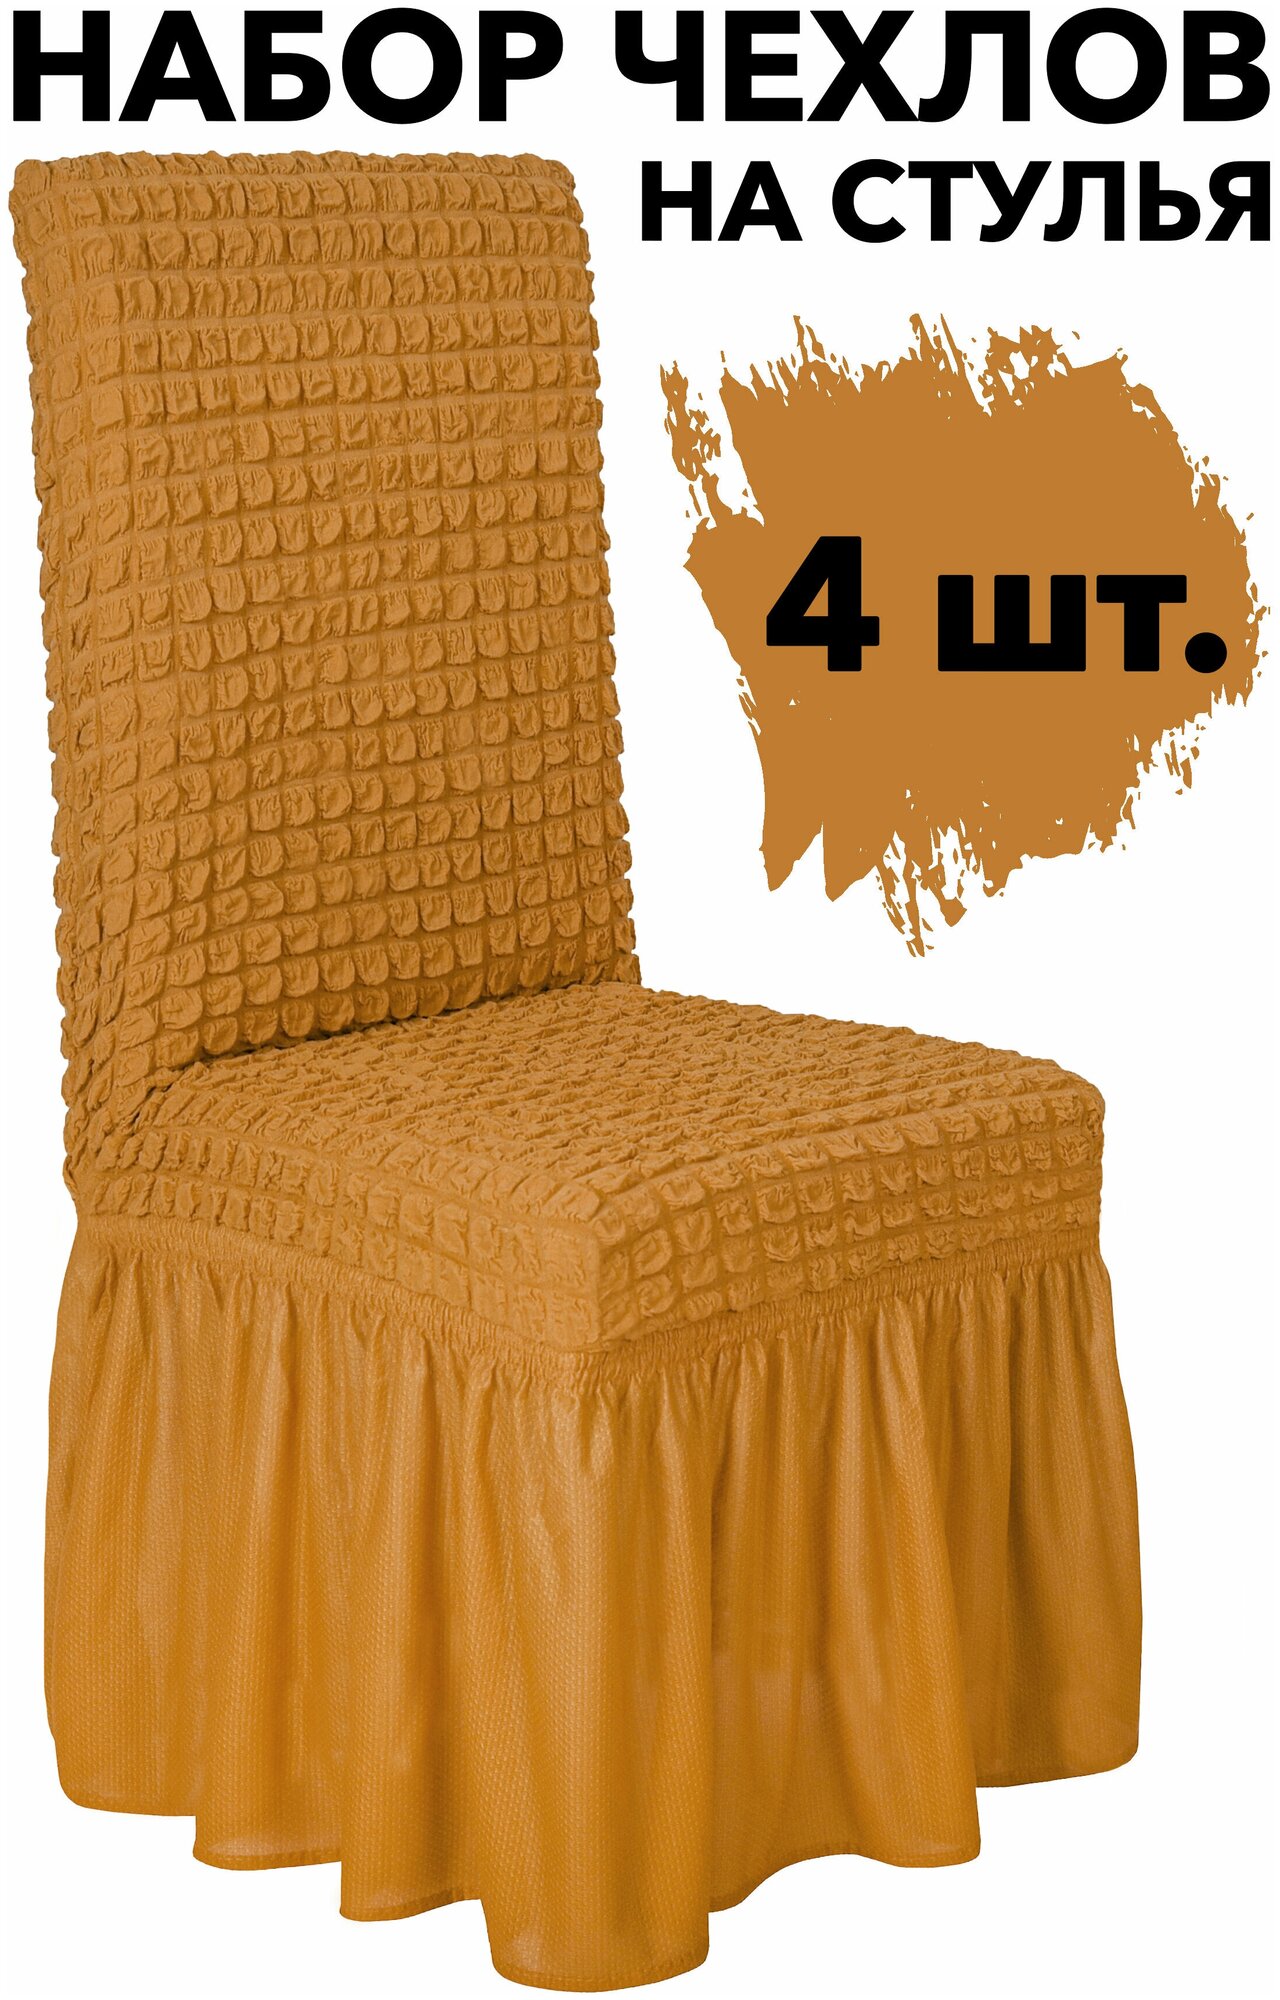 Чехлы для стульев со спинкой 4 шт набор универсальный с юбкой на кухню, цвет Горчичный